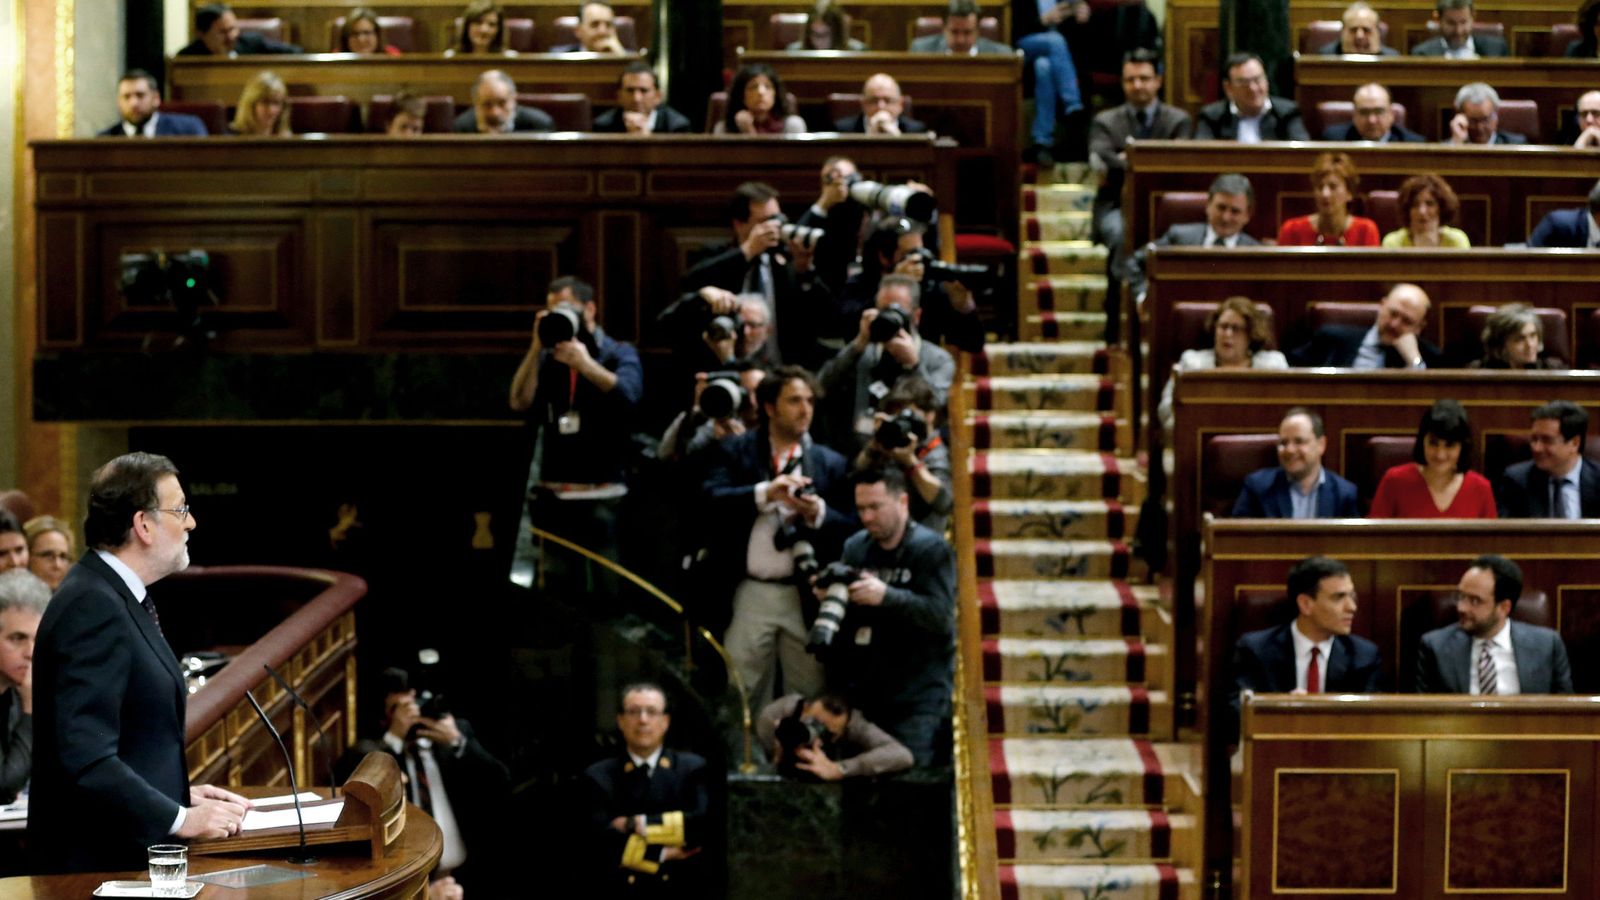 Foto: El presidente del Gobierno en funciones, Mariano Rajoy, el pasado 4 de marzo en el Congreso de los Diputados. (EFE)